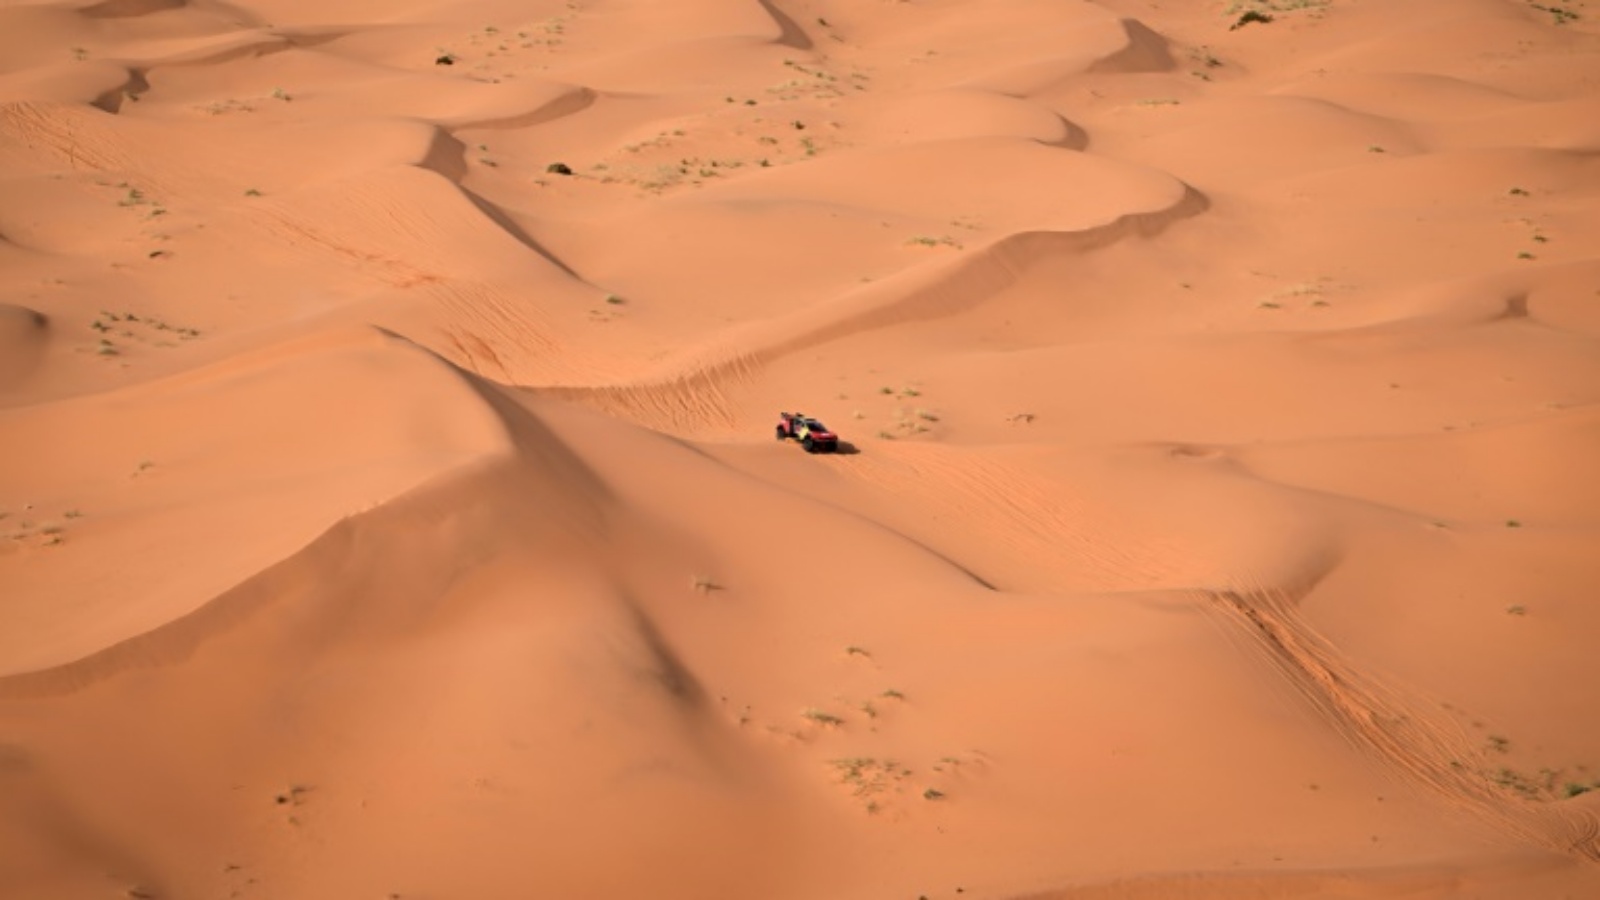 سائق برودرايف الفرنسي سيباستيان لوب خلال المرحلة الثامنة بين الدوادمي وحائل من رالي دكار في المملكة العربية السعودية في 15 كانون الثاني (يناير) 2024